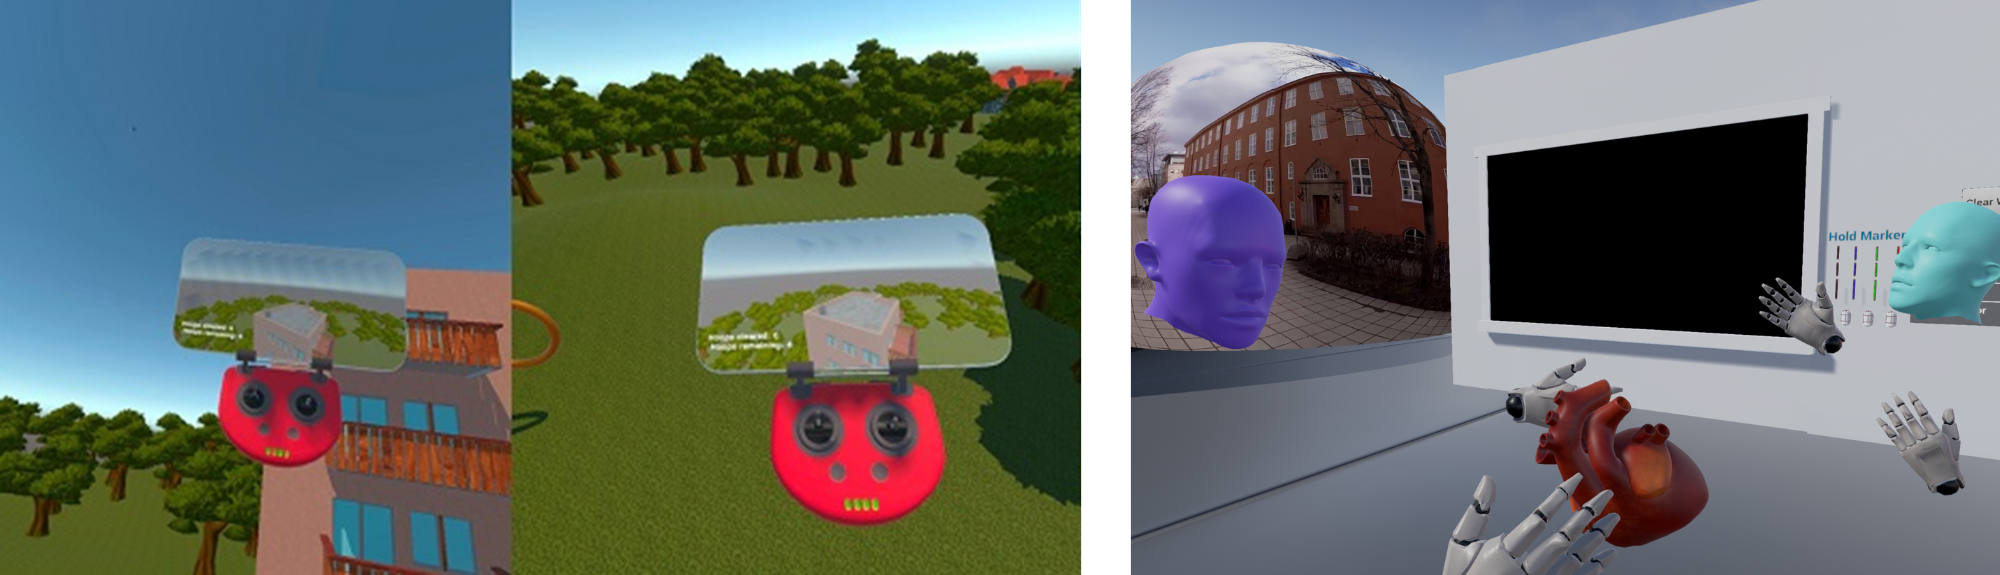 Øving på brannslukking med drone i VR / Studenter møtes i VR